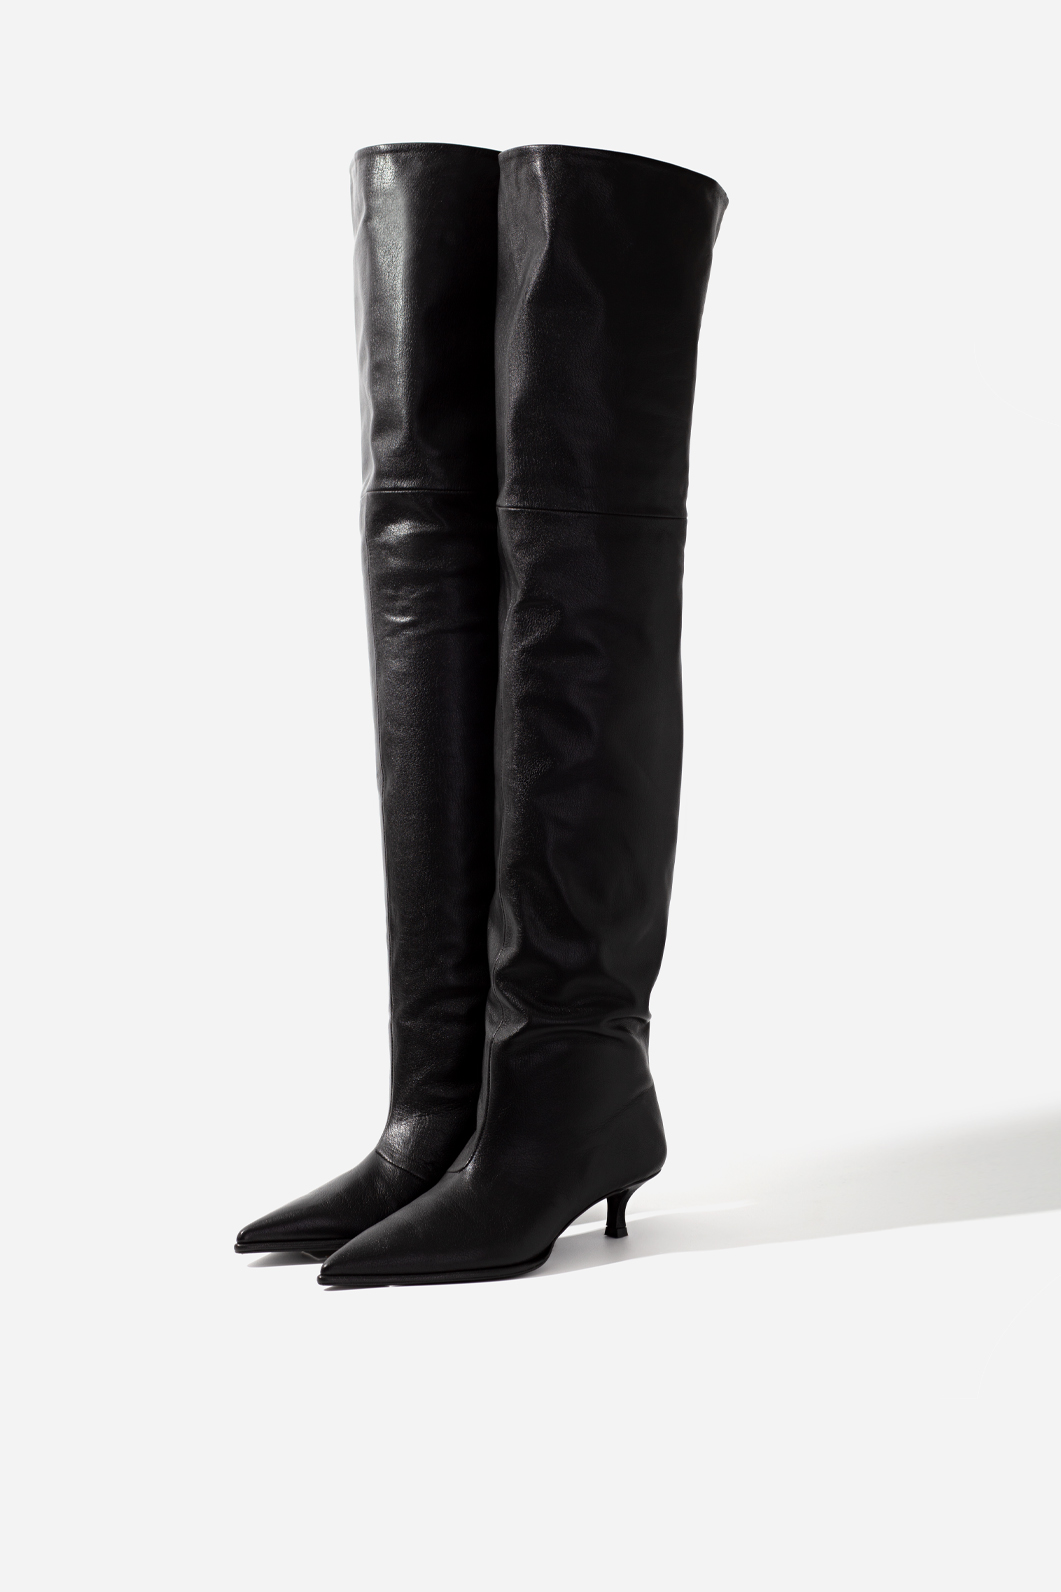 Black leather Alia knee boots